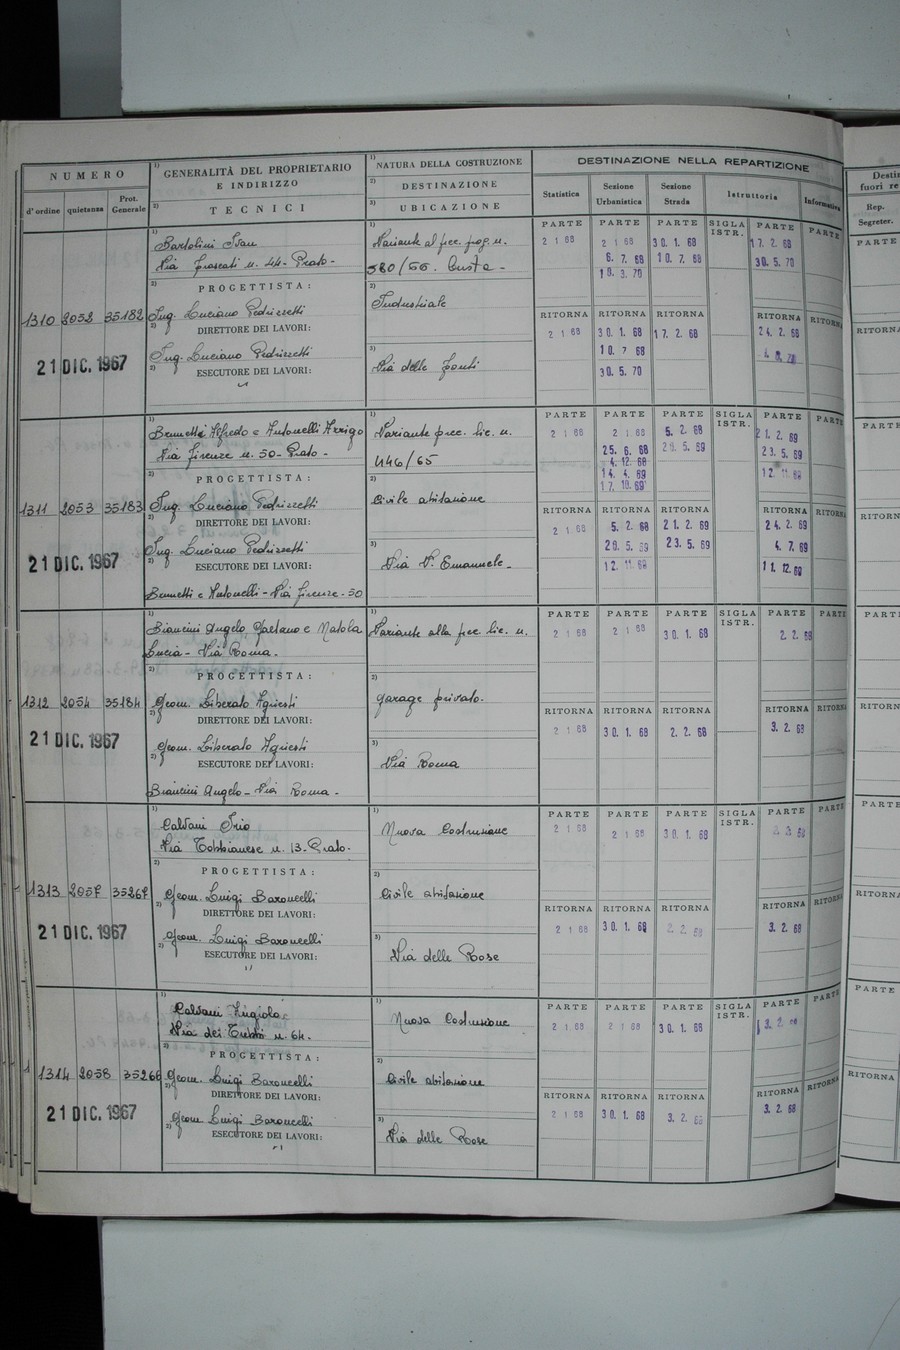 Foto del lato sinistro del registro con i dati della pratica 1310/1967